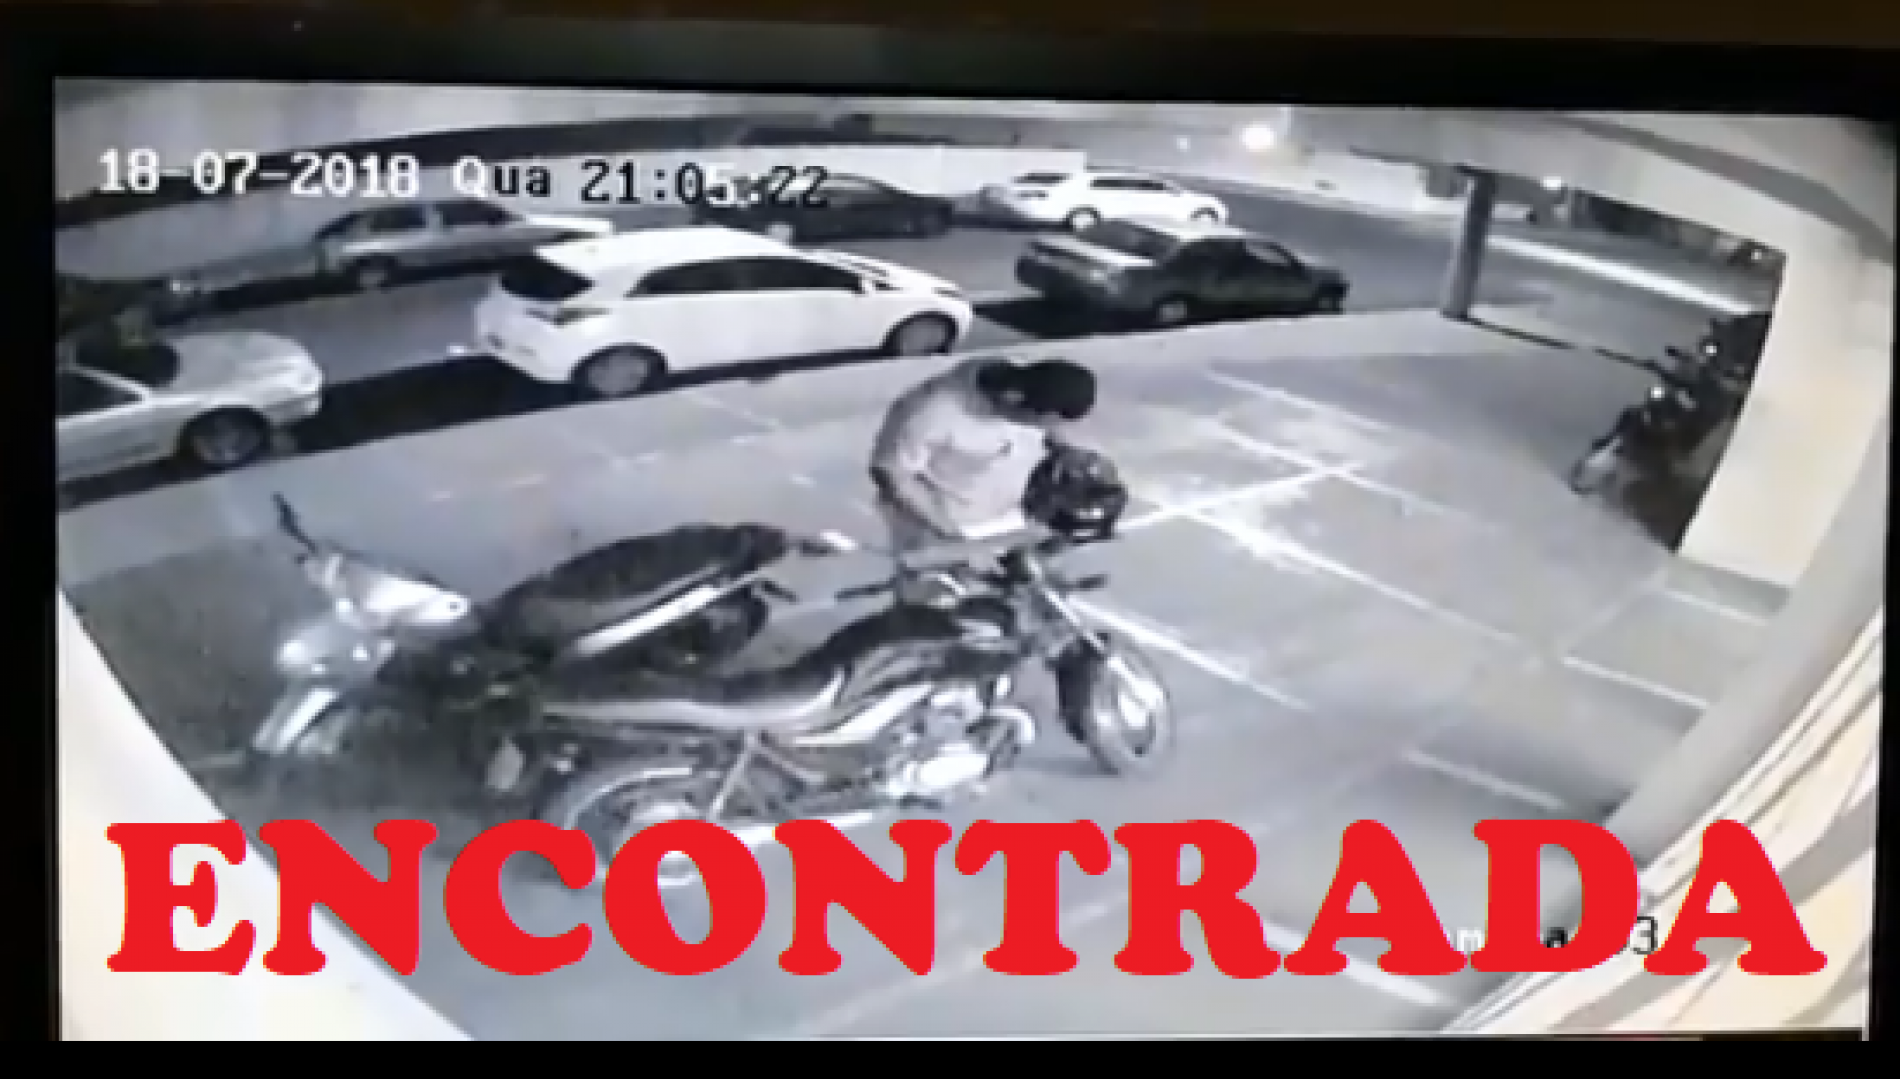 BARRETOS: Policia Militar localiza e recupera moto furtada